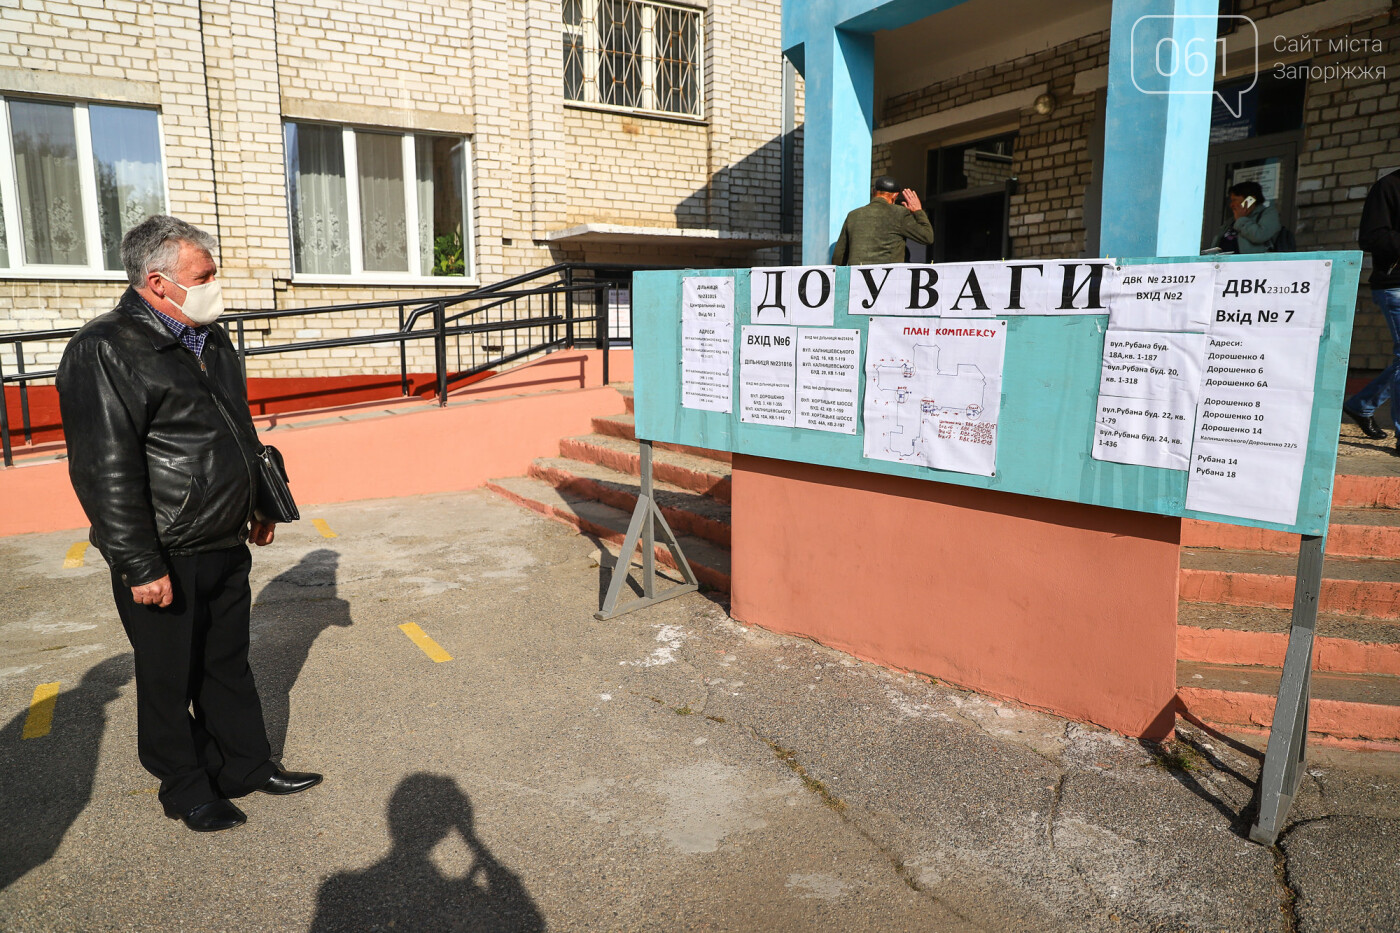 Выборы в условиях карантина: как запорожцы выбирают мэра и депутатов, - ФОТОРЕПОРТАЖ, фото-1